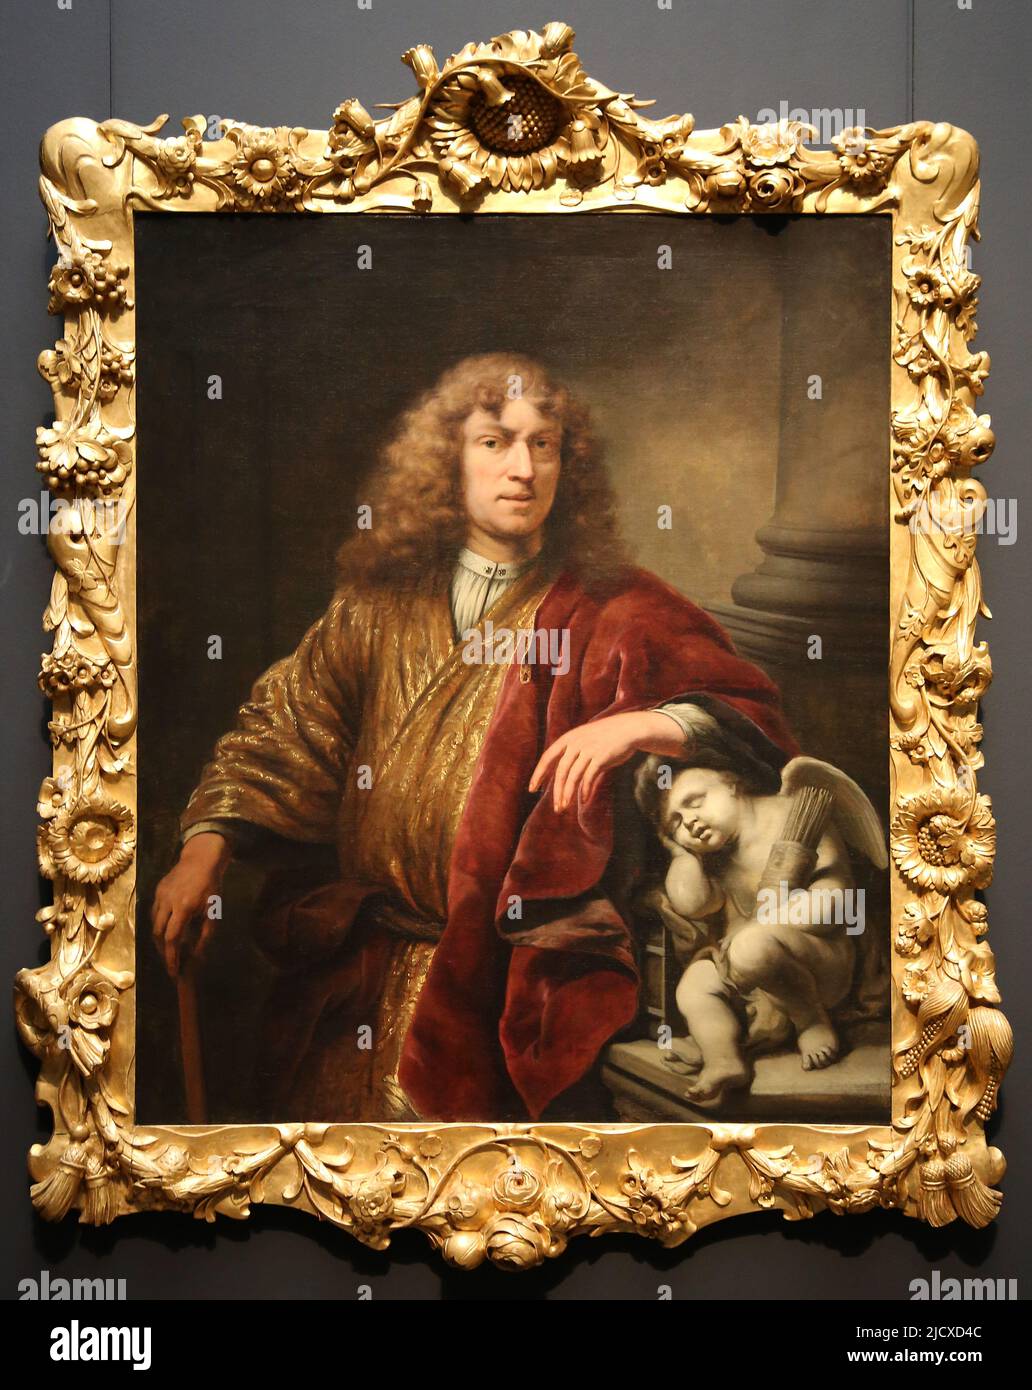 Ferdinand Bol (1616-1680). Autoritratto. Olio su tela, c.. 1669. Rijksmuseum. Amsterdam. Paesi Bassi. Foto Stock